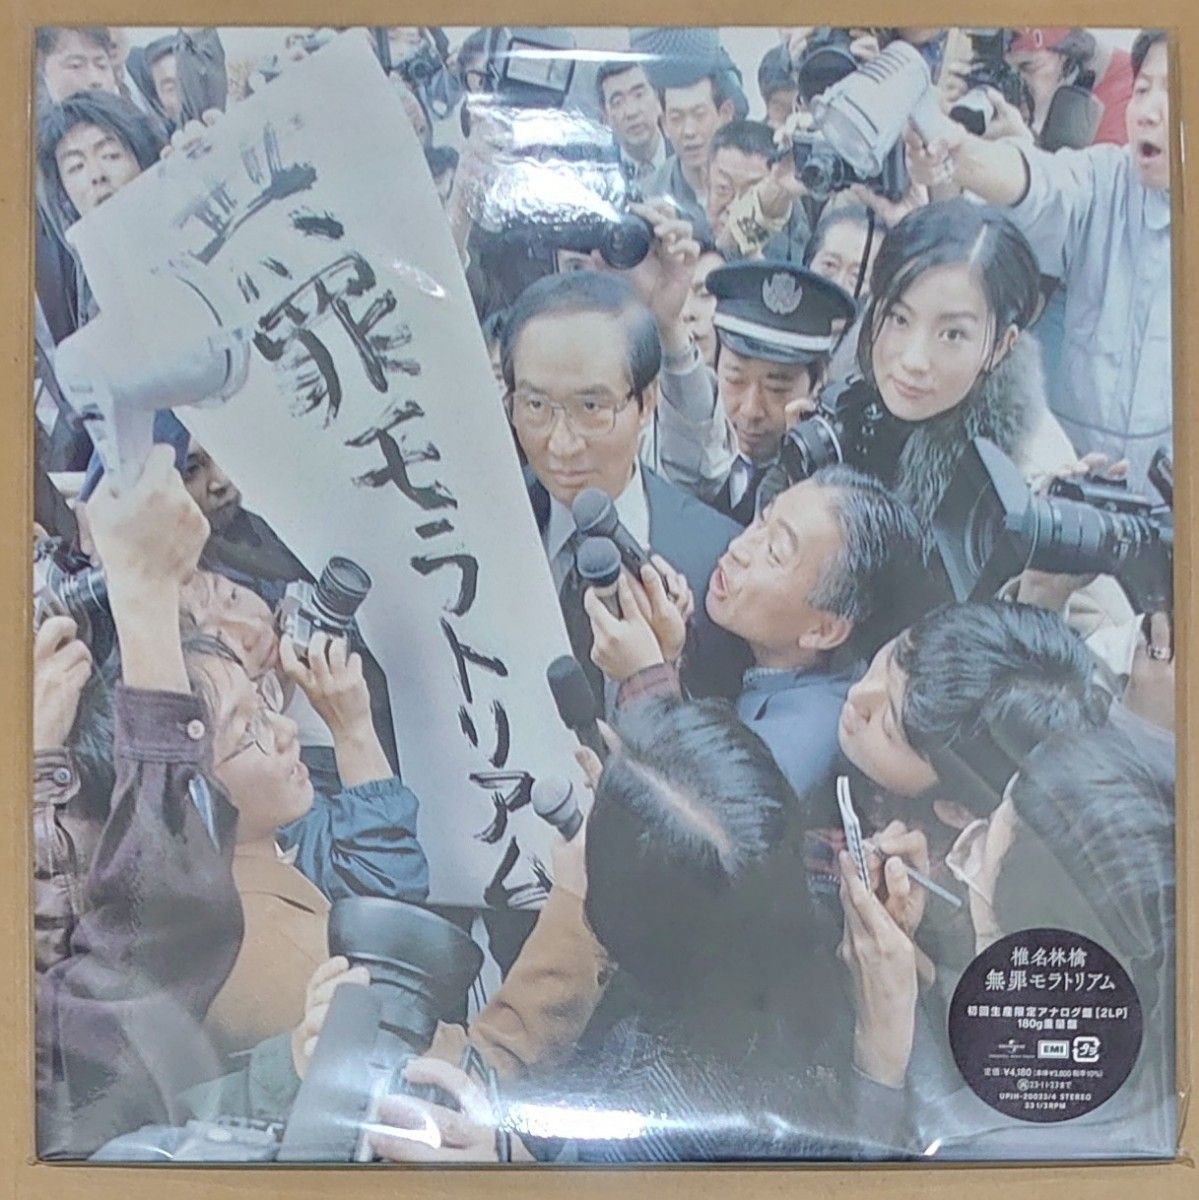 椎名林檎 無罪モラトリアム+勝訴ストリップ LP レコード 2作品セット